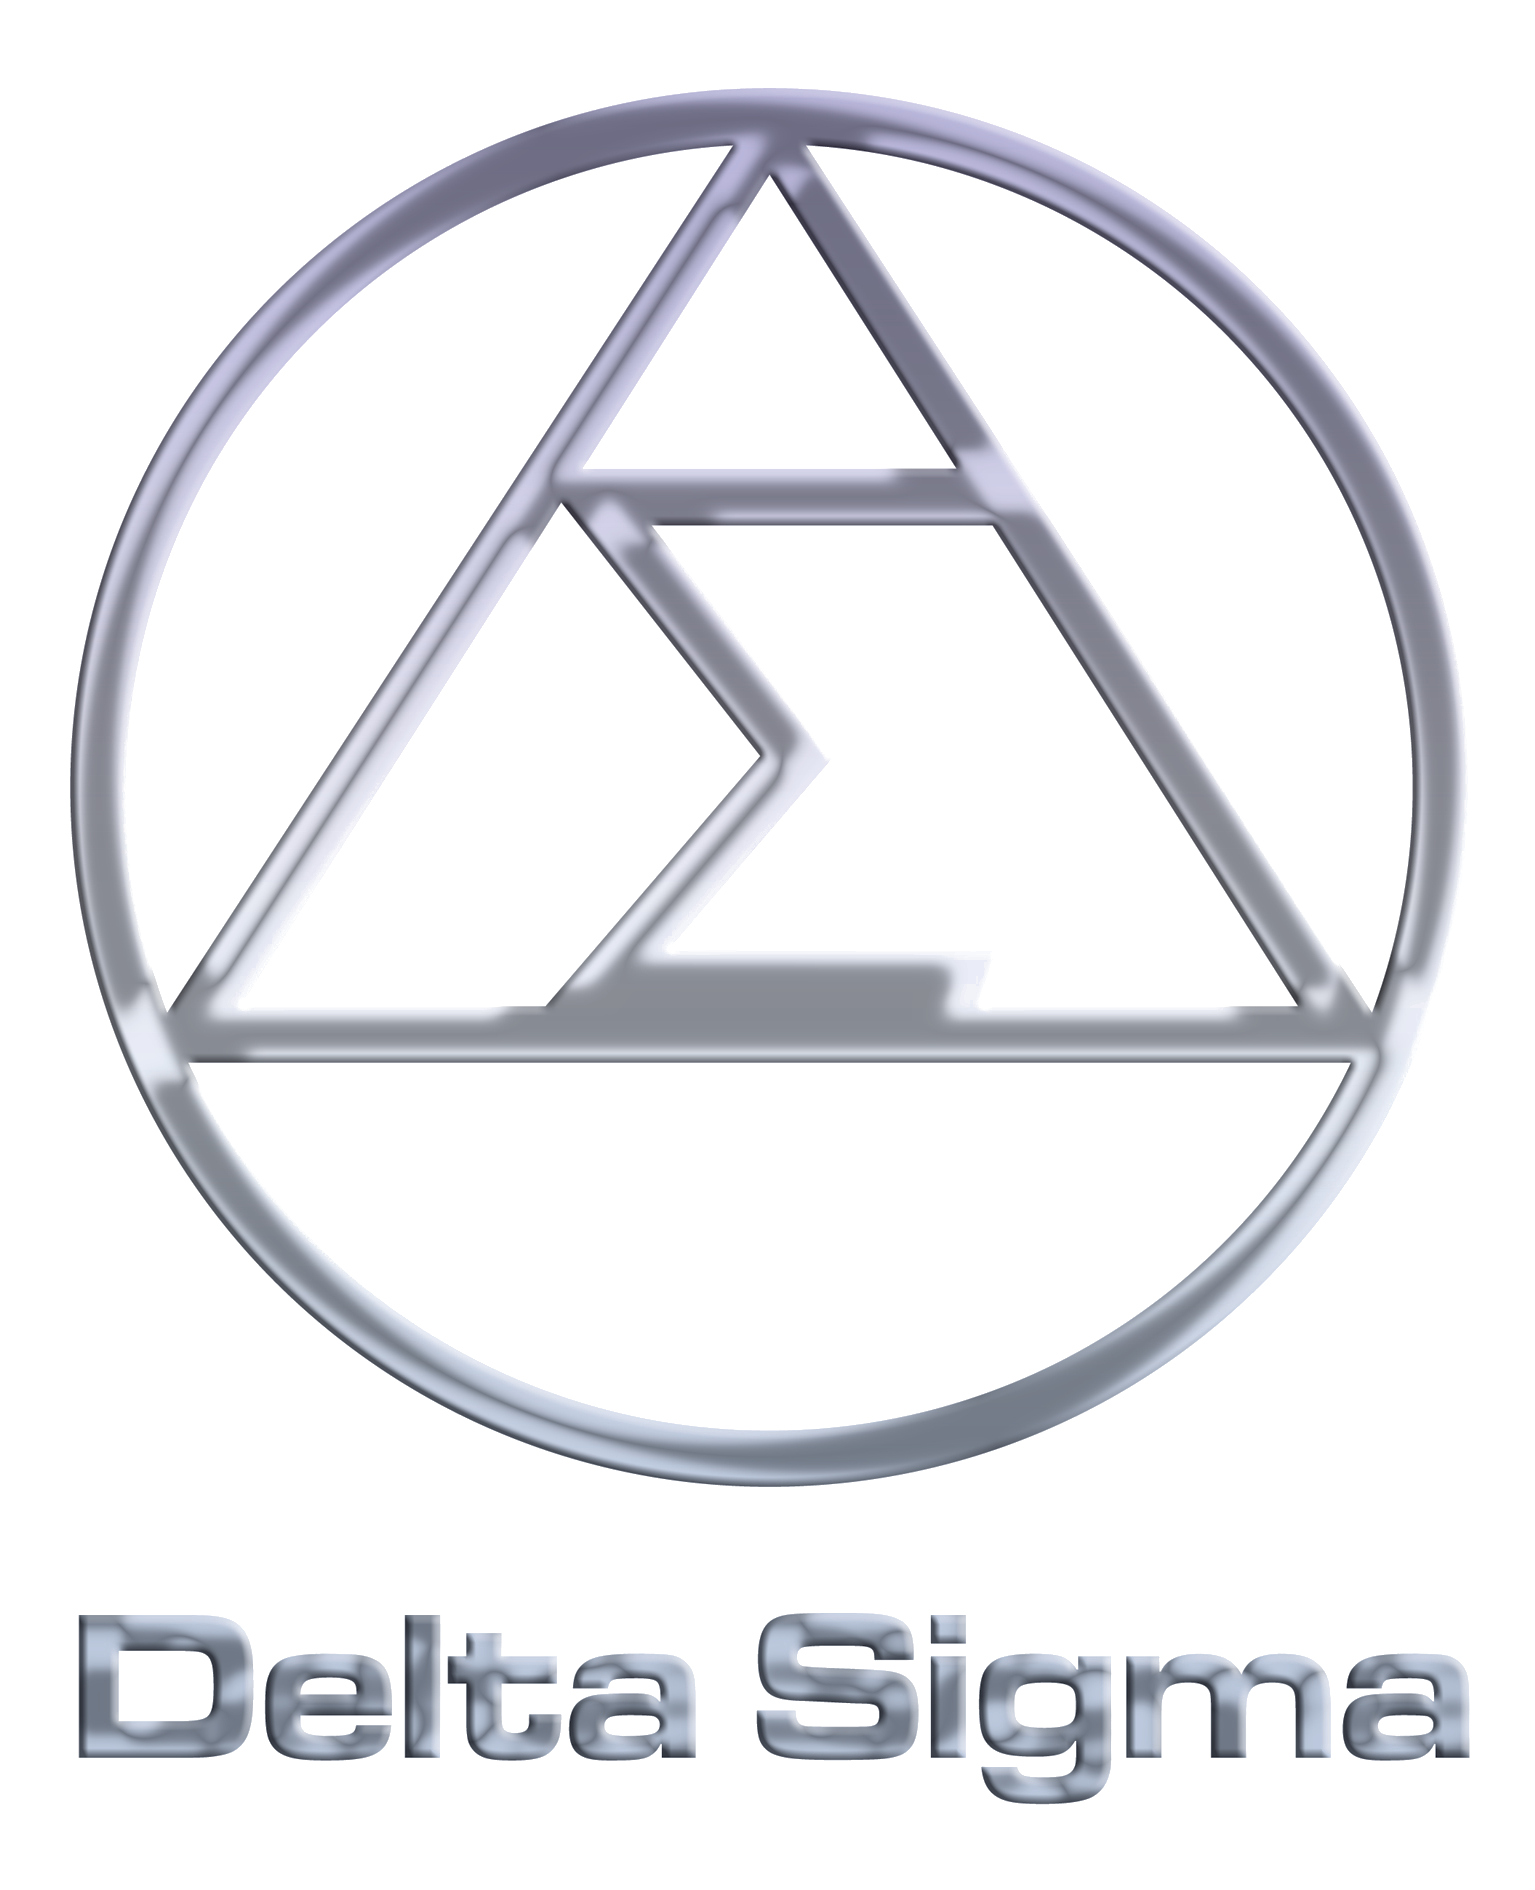 Delta Sigma - Luxury Audio & Design